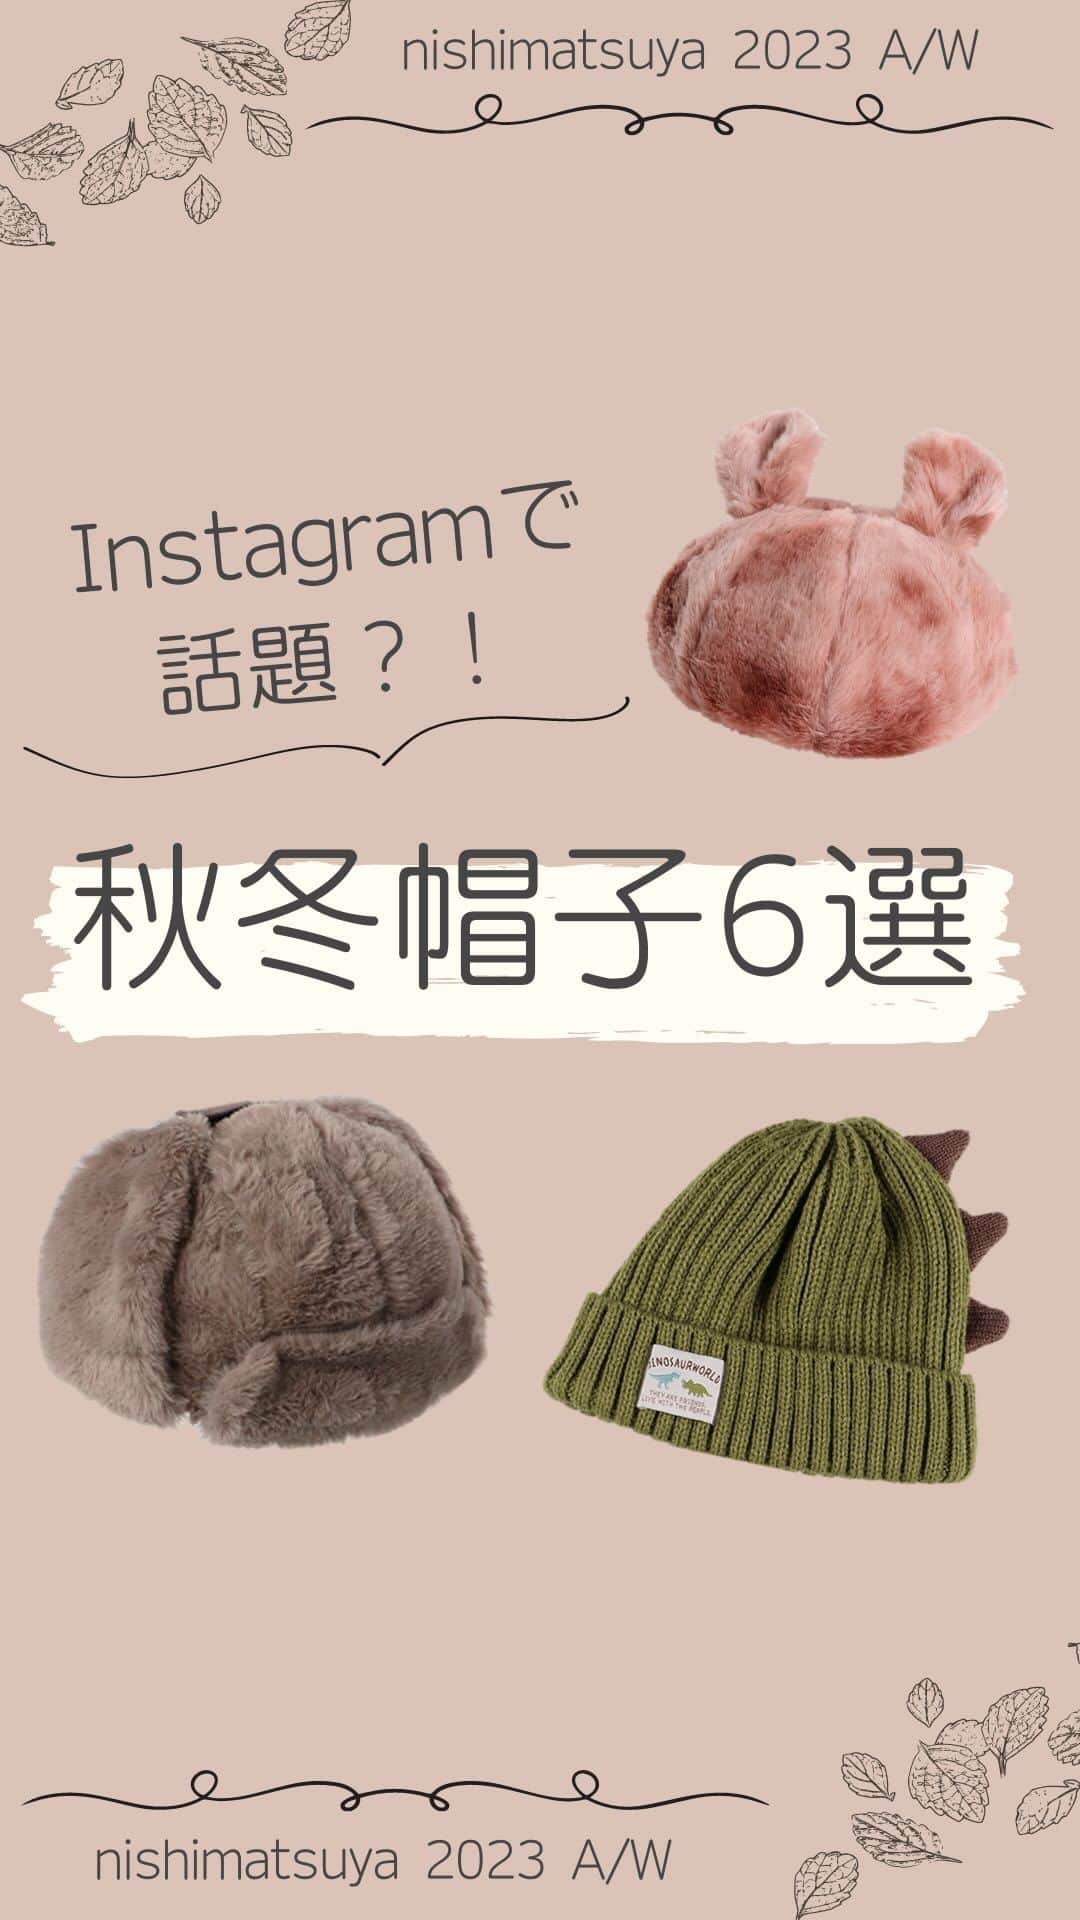 西松屋のインスタグラム：「Instagramで人気の秋冬帽子を６つご紹介！  ベレー帽、パイロットキャップ、ニット帽… かぶるだけで秋冬コーデがぐっとおしゃれになっちゃいます🍂  気になるアイテムはありましたか？👀 気になる商品を、ぜひコメントで教えてください💬  ━━━━━━━━━━━━━━━ ①：マーブルファーアニマルベレー帽子（くま・うさぎ） ￥979（税込¥1,076） 品番：23W-011 サイズ：48-50cm  ②：もこもこパイロットキャップ ￥979（税込¥1,076） 品番：23WSC-1103 サイズ：56cm  ③：恐竜なりきりワッチ ￥749（税込¥823） 品番：3877511 サイズ：48cm  ④：とんがりニットベレー ￥749（税込¥823） 品番：3877507 サイズ：50cm  ⑤：ワッペン付き配色ワッチ ￥549（税込¥603） 品番：3877513 サイズ：50cm  ⑥：ねこ耳ニットワッチ ￥549（税込¥603） 品番：3877500 サイズ：50-52cm ━━━━━━━━━━━━━━━ ※掲載商品の価格は投稿時の価格です。 ※掲載商品は実物と色が異なる場合がございます。 ※店舗により品揃え・在庫が異なる場合がございます。 ※売り切れの場合はご容赦ください。  ・━・━・━・━・━・━・━・ 📣ご質問やコメントへのご返信は致しかねますが、 サービス向上のための貴重な情報として、スタッフが拝見しております。  📣#西松屋これくしょん もしくは @24028.jp を付けて投稿してね！ こちらの西松屋公式アカウントで紹介させていただくかも♪ 皆さまの投稿お待ちしております☺︎  ※DMであらかじめご連絡を差し上げ、許可を頂いた投稿のみを紹介させていただきます。 ※DM内で外部サイトへの遷移や個人情報の入力をお願いすることはございません。 ・━・━・━・━・━・━・━・  #西松屋 #nishimatsuya #24028 #秋服 #秋コーデ #冬服 #冬コーデ #帽子 #ハット #ベレー帽 #フライトキャップ #ニット帽子 #キッズ帽子 #ベビー帽子 #子ども帽子 #赤ちゃん帽子 #キッズコーデ #ベビーコーデ #男の子コーデ #女の子コーデ #お出かけコーデ #西松屋コーデ #赤ちゃん #ベビー #キッズ #子育てママ #赤ちゃんのいる生活 #子供のいる暮らし #子どものいる暮らし」